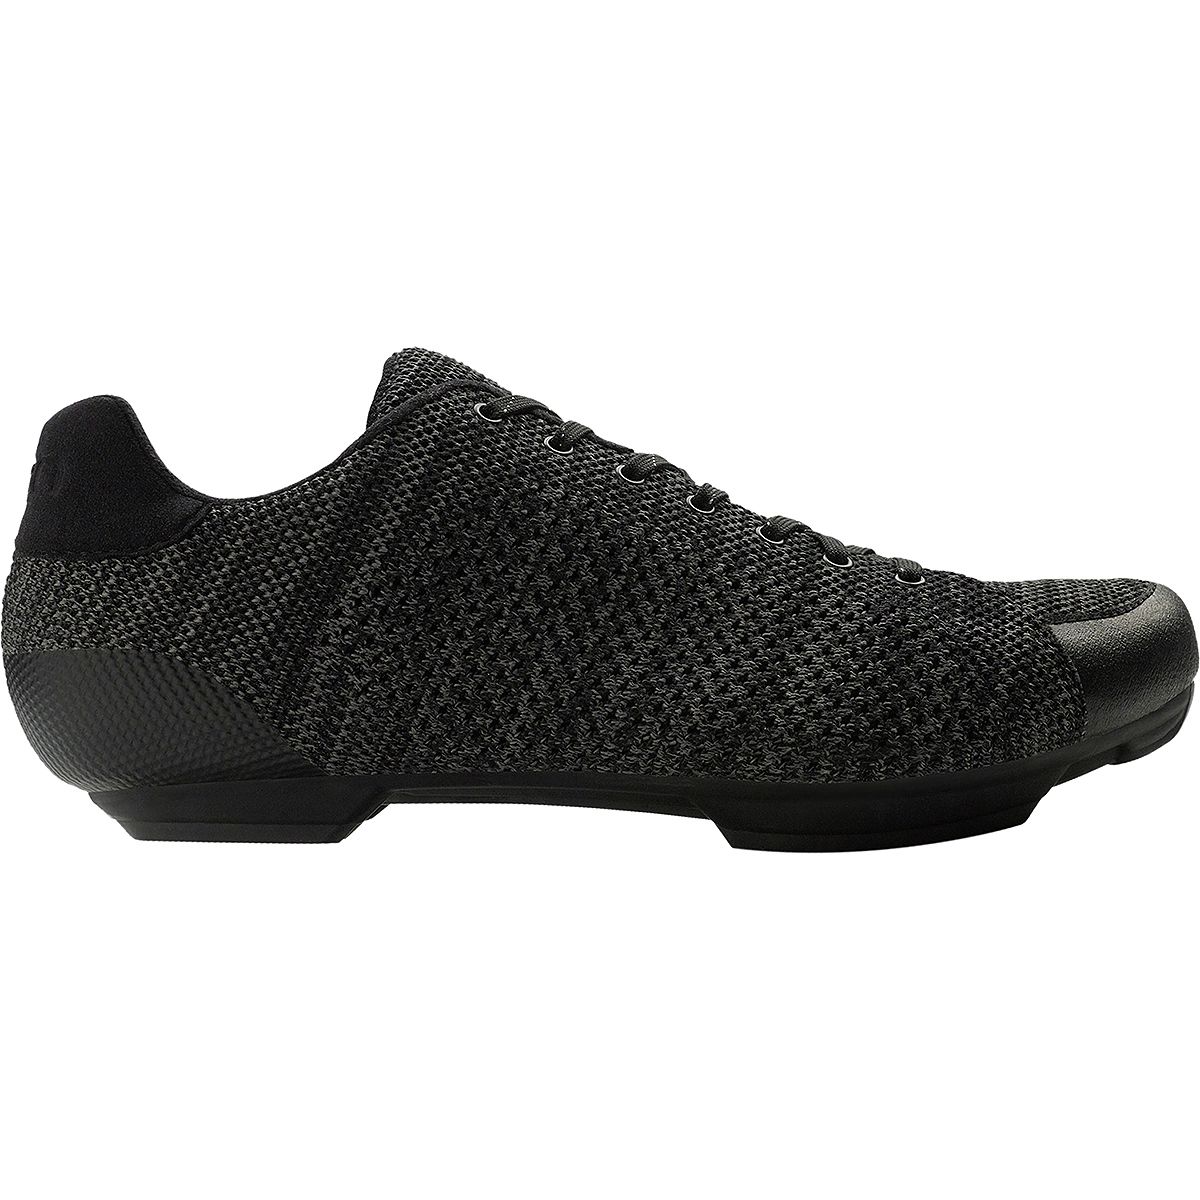 Giro Republic R Knit Cycling Shoe - Men's Black/Charcoal Heather, 41.0